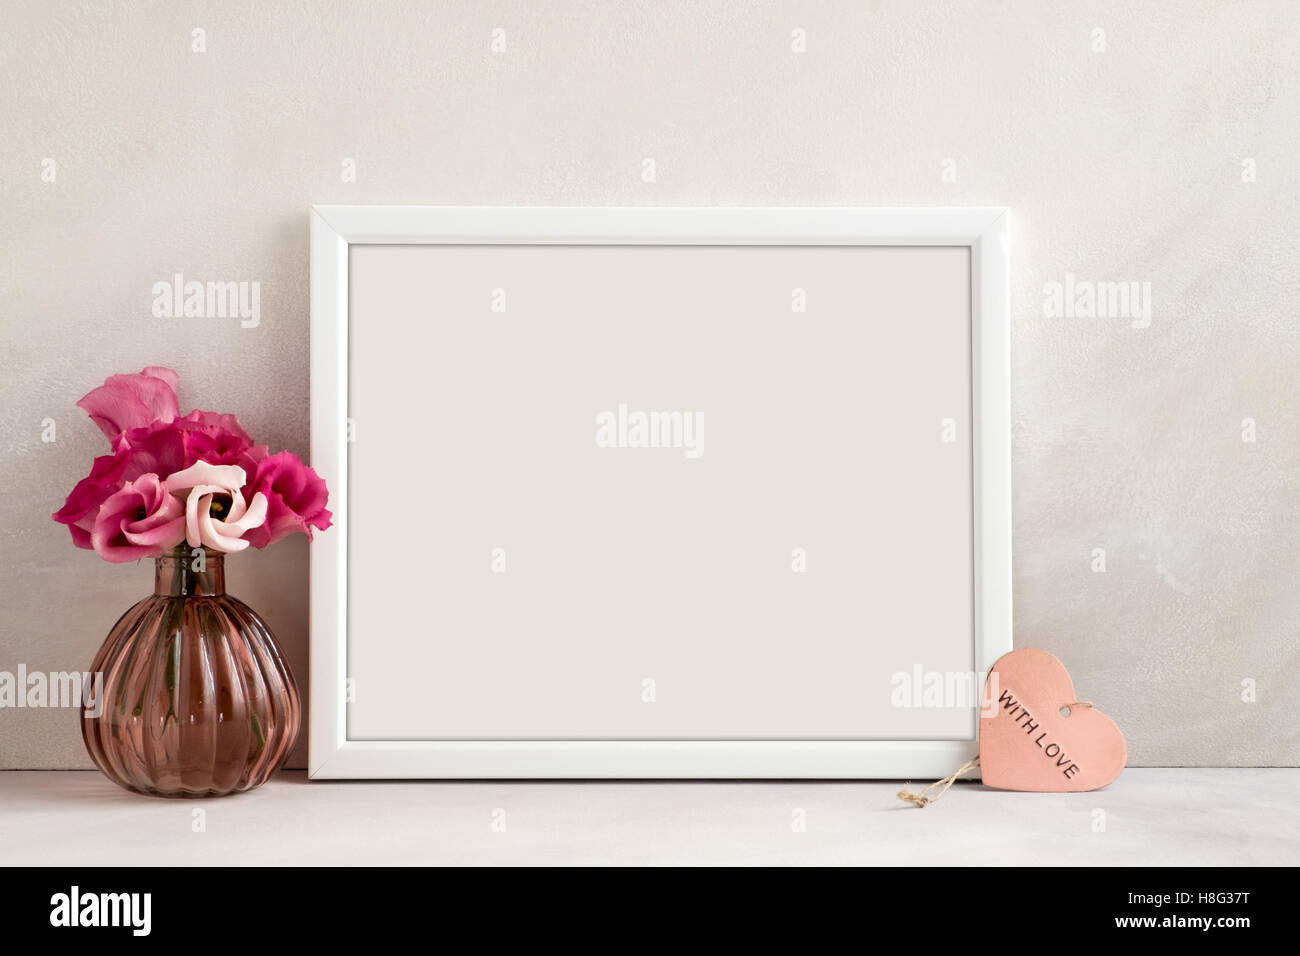 Bianco paesaggio mockup del telaio, un vaso di fiori & rosa cuore accanto al telaio, overlay preventivo, la promozione, il titolo o il design. Ottimo per le piccole aziende Foto Stock